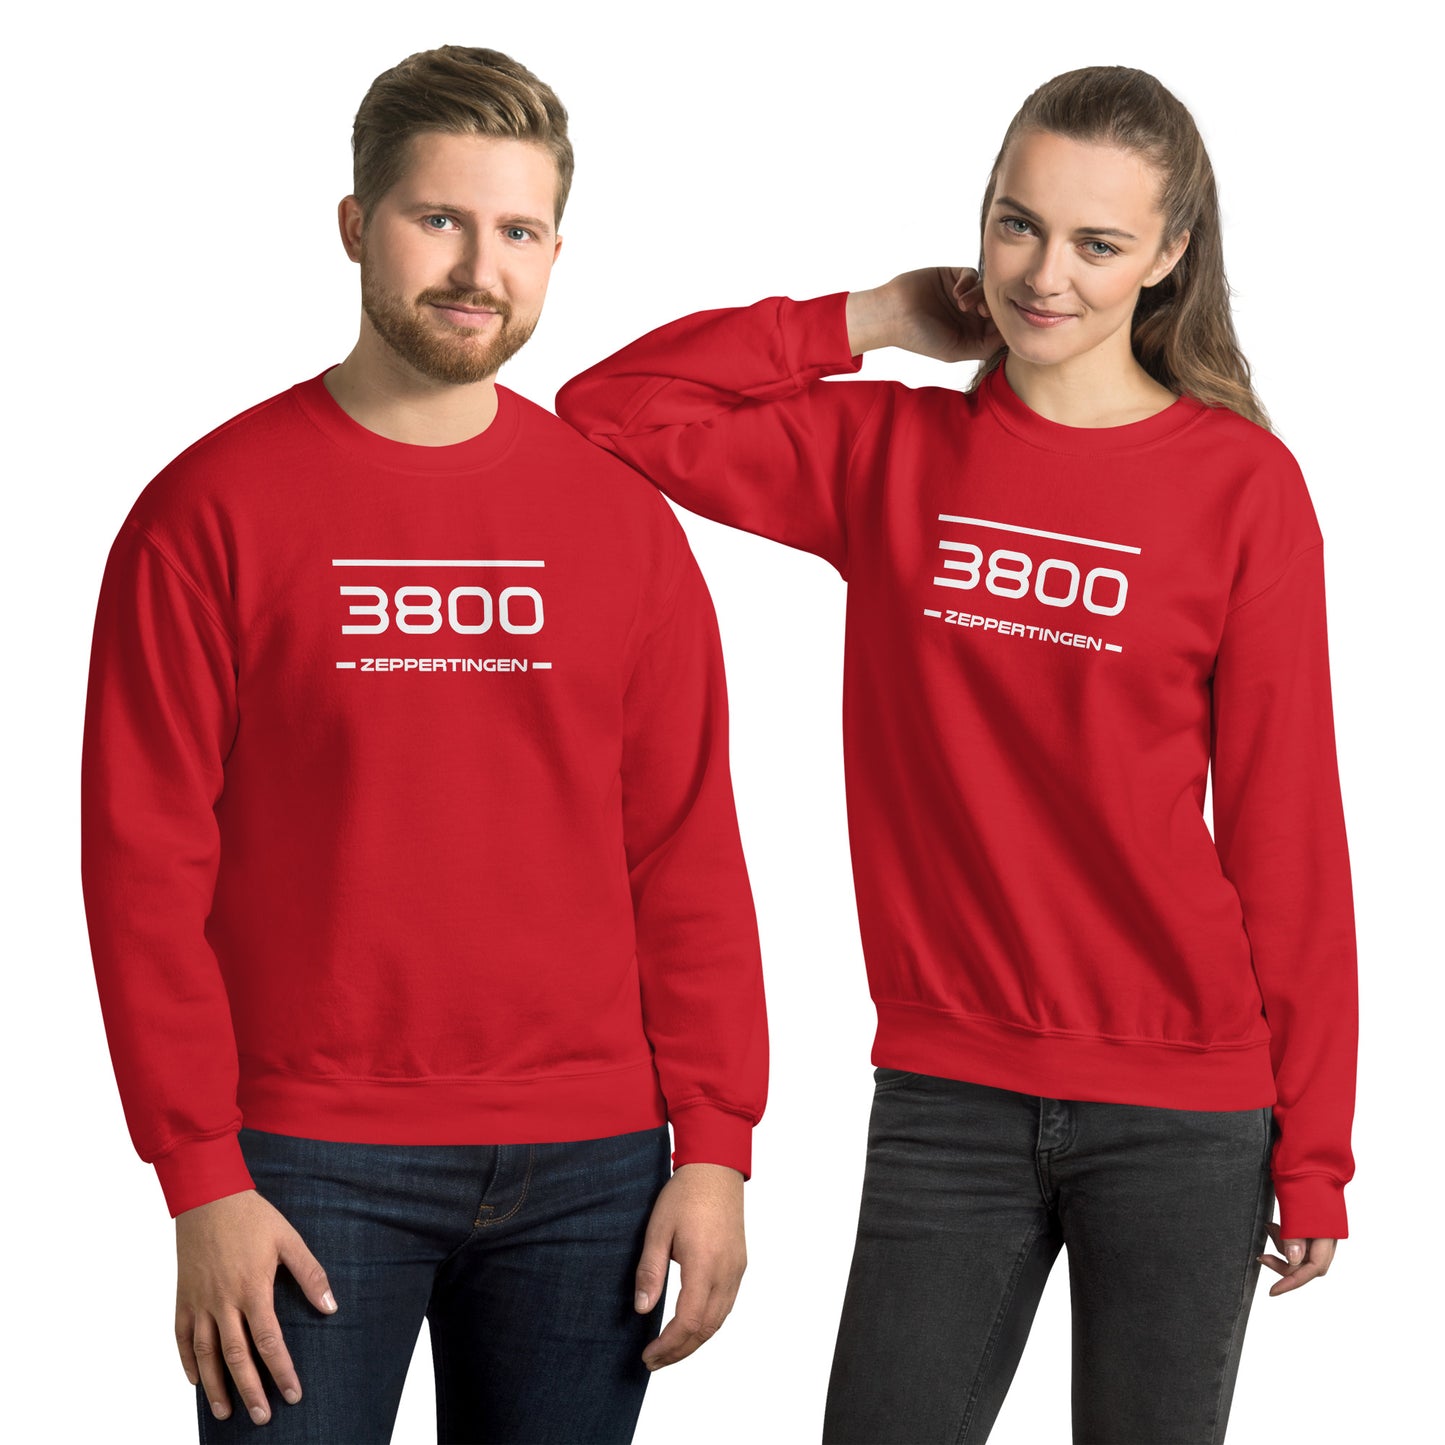 Sweater - 3800 - Zeppertingen (M/V)